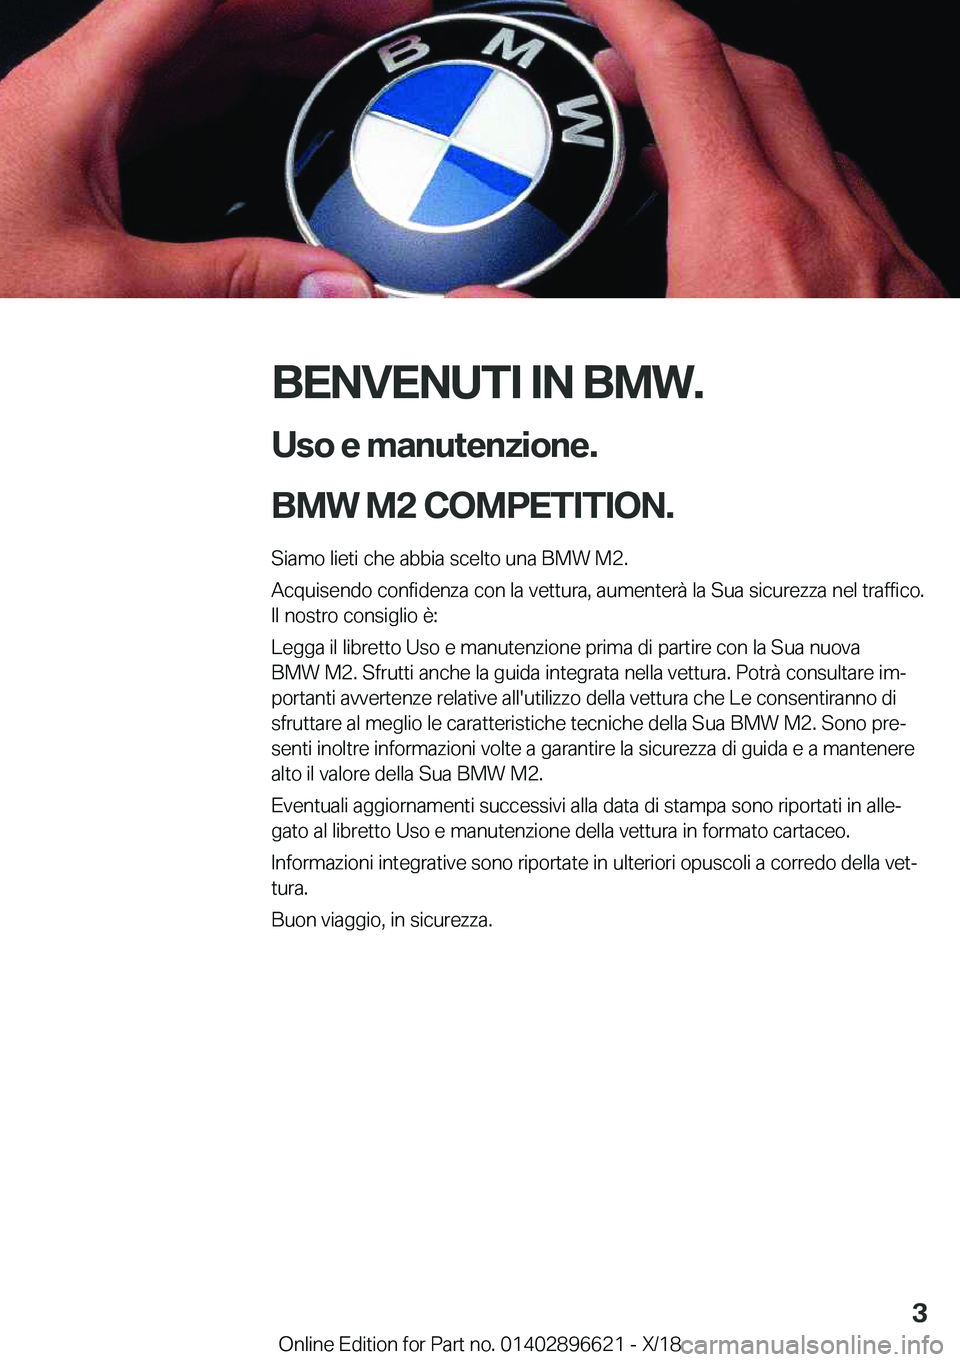 BMW M2 2019  Libretti Di Uso E manutenzione (in Italian) �B�E�N�V�E�N�U�T�I��I�N��B�M�W�.�U�s�o��e��m�a�n�u�t�e�n�z�i�o�n�e�.
�B�M�W��M�2��C�O�M�P�E�T�I�T�I�O�N�.�
�S�i�a�m�o��l�i�e�t�i��c�h�e��a�b�b�i�a��s�c�e�l�t�o��u�n�a��B�M�W��M�2�. �A�c�